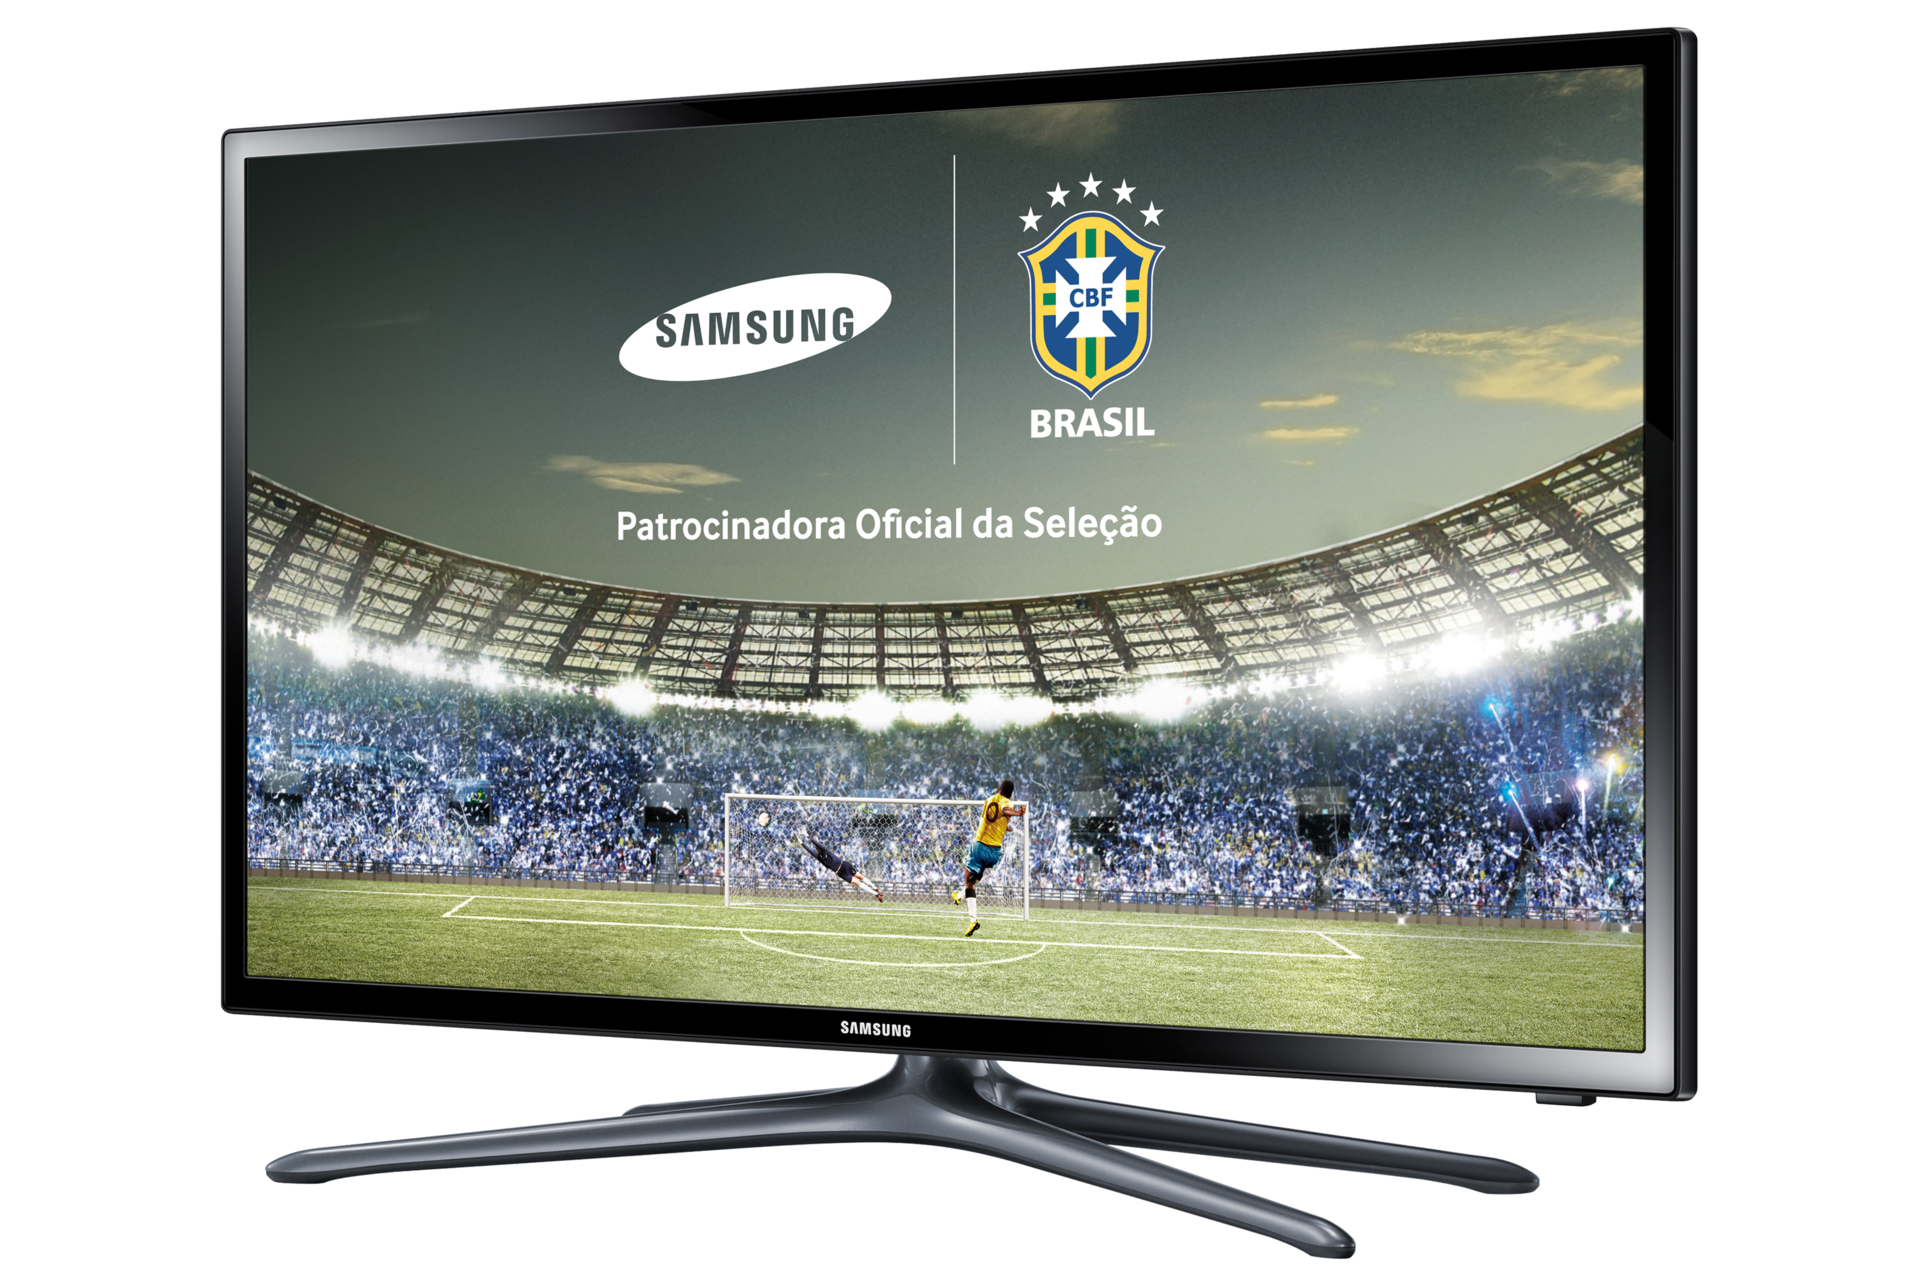 Smart TV HD LED 32 | SAMSUNG3000 x 2000